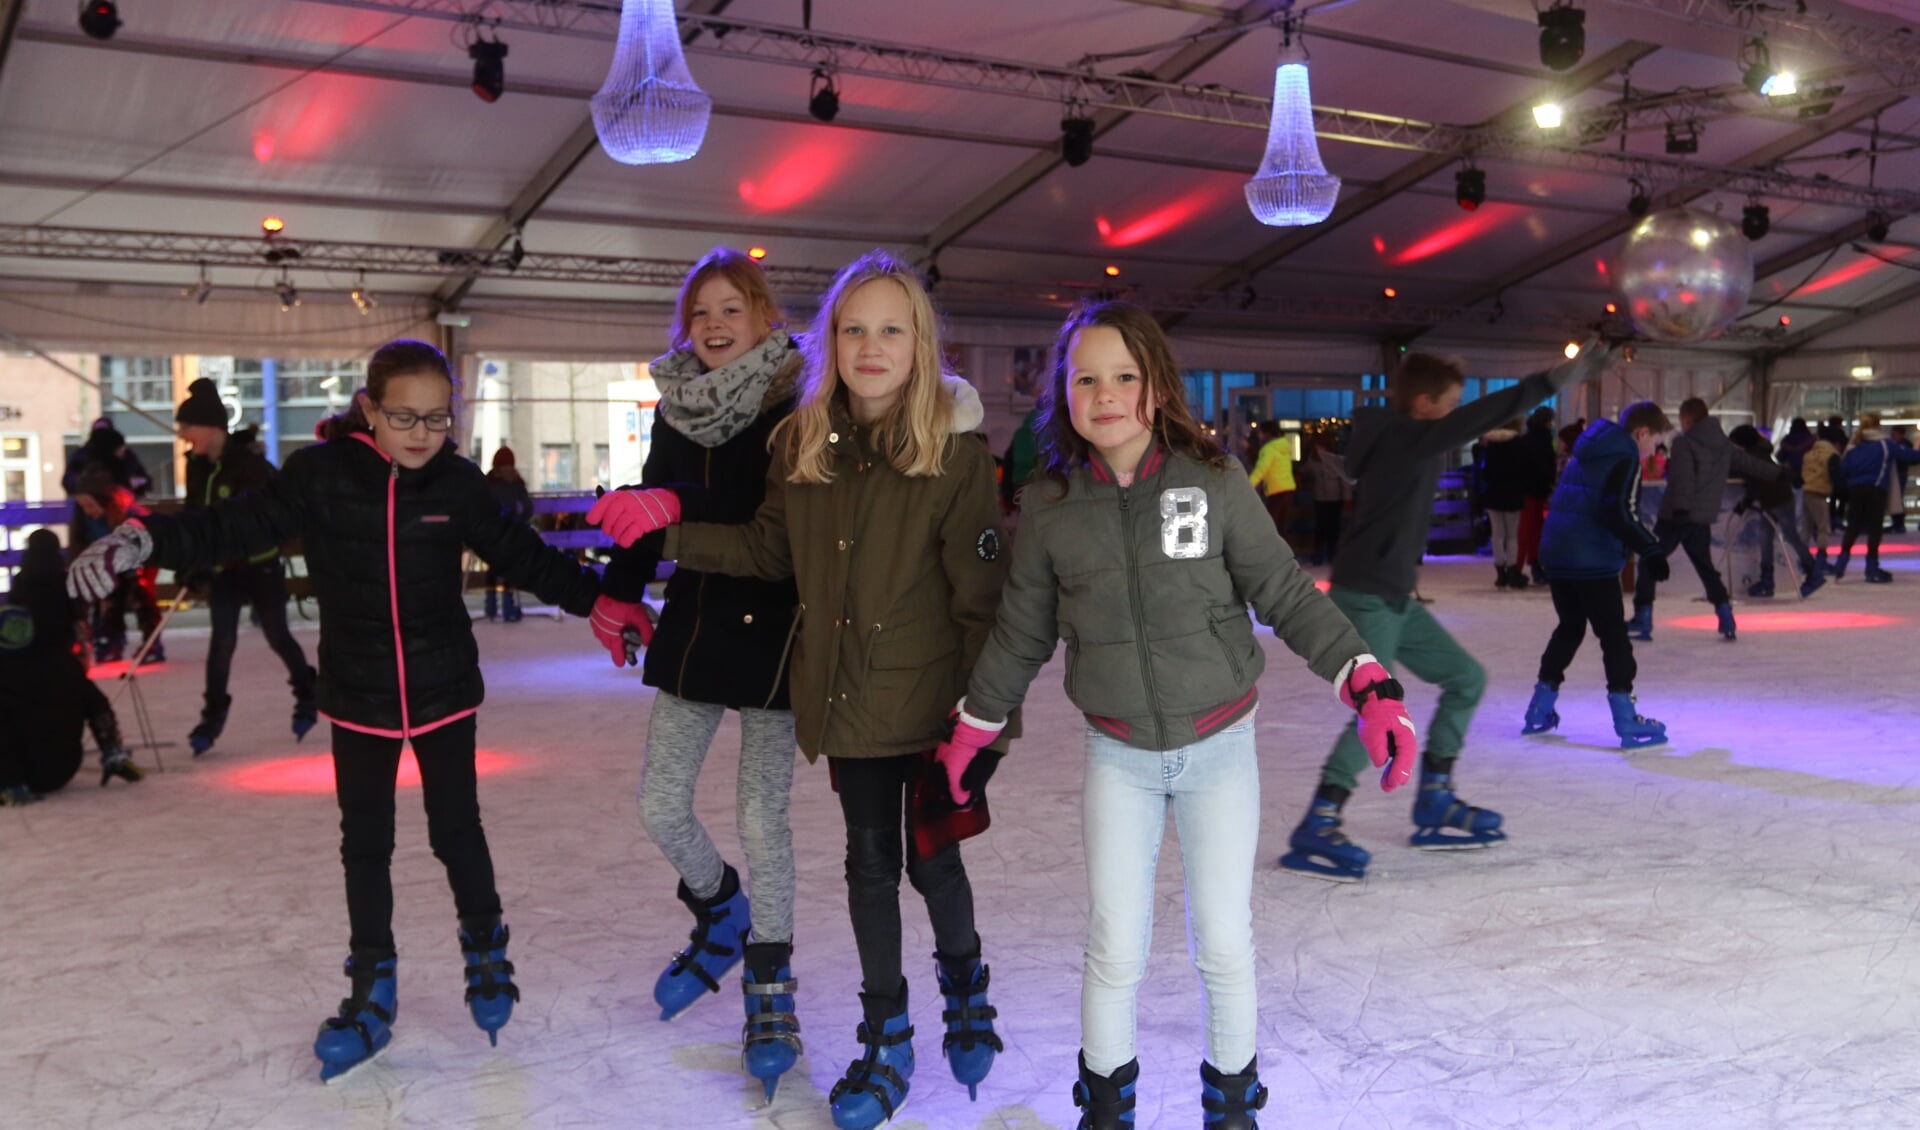 De schaatsbaan is ieder jaar pret voor jong en oud.